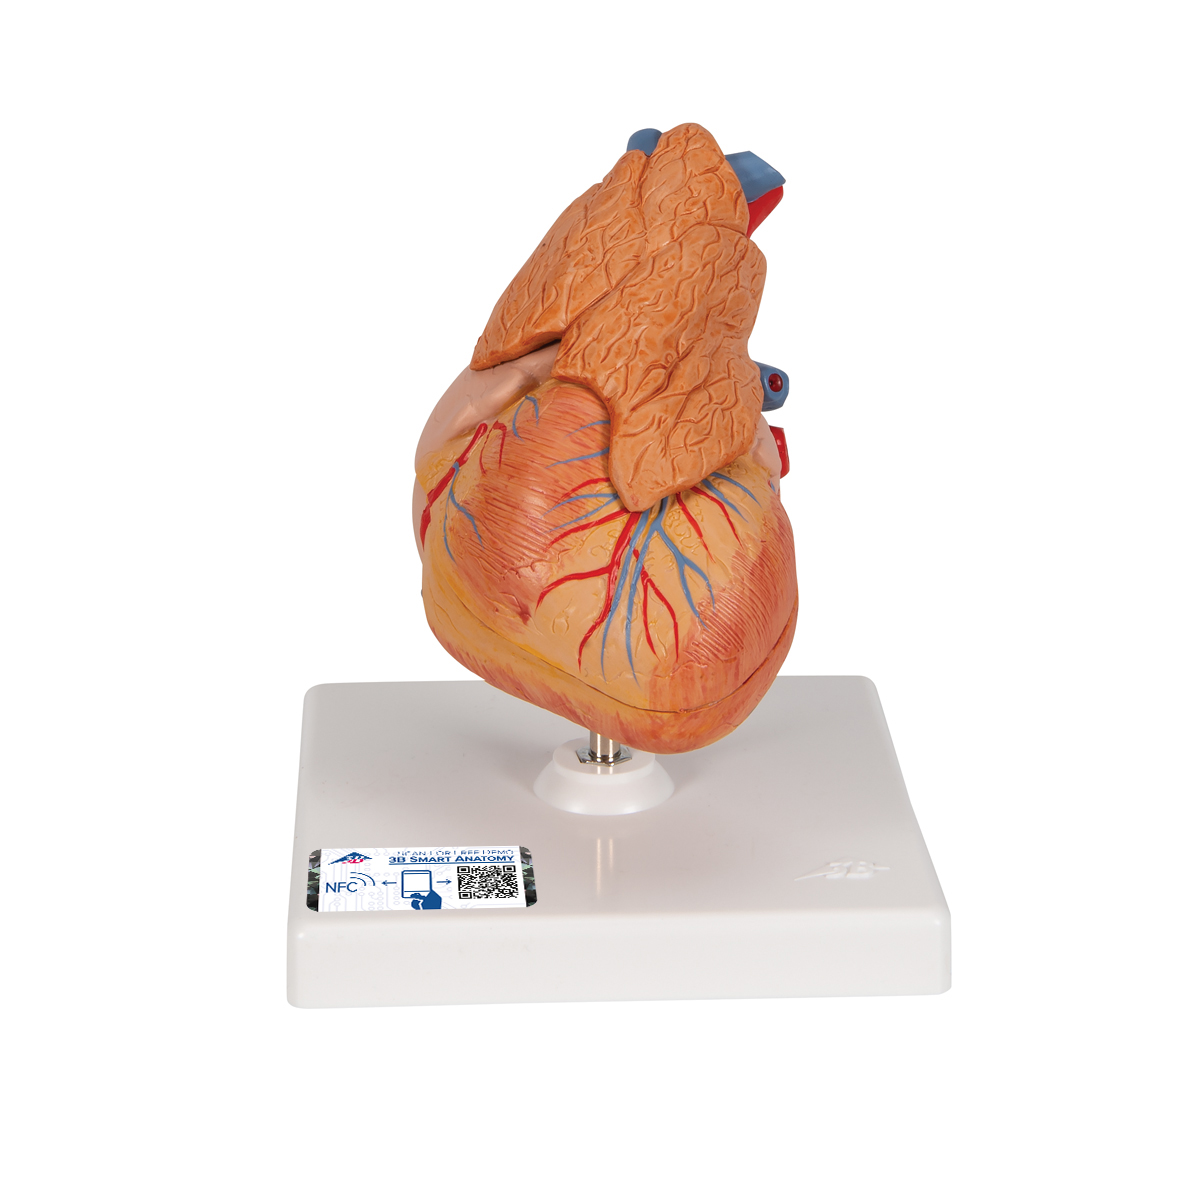 Herzmodell "Klassik" mit Thymus, 3-teilig - 3B Smart Anatomy, Bestellnummer 1000265, G08/1, 3B Scientific